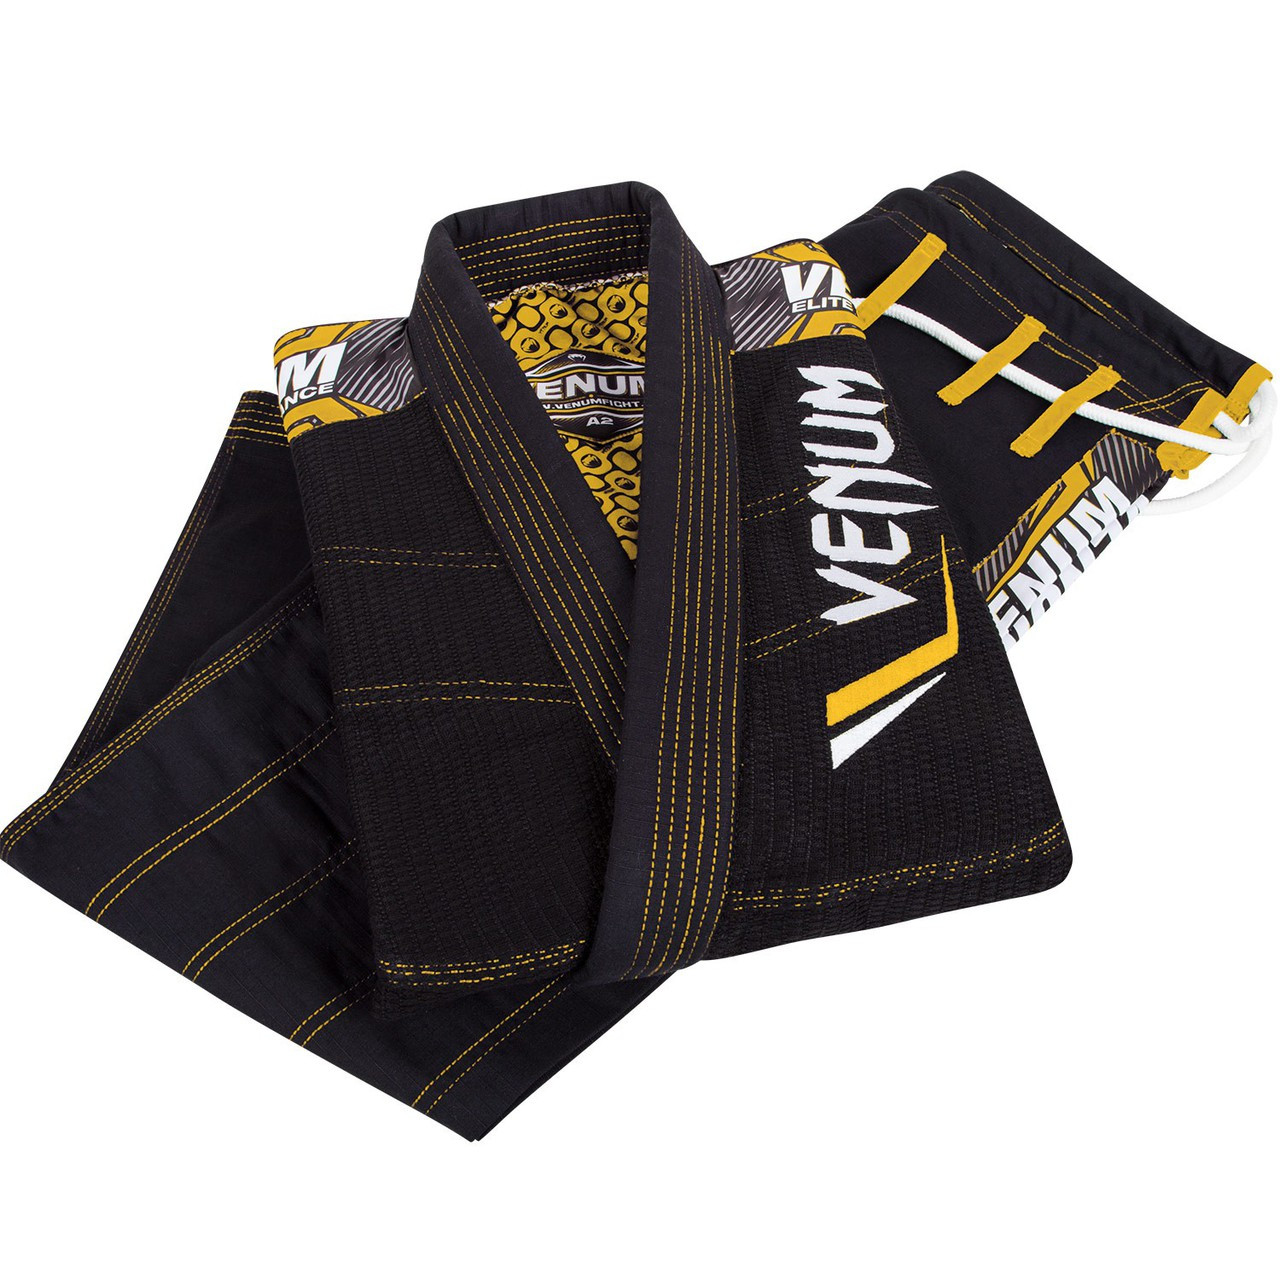 Venum Elite Jiu Jitsu Gi in Black and yellow.  Now available at www.thejiujitsushop.com Including Gi light Gi Bag

Enjoy free shipping from The Jiu Jitsu Shop